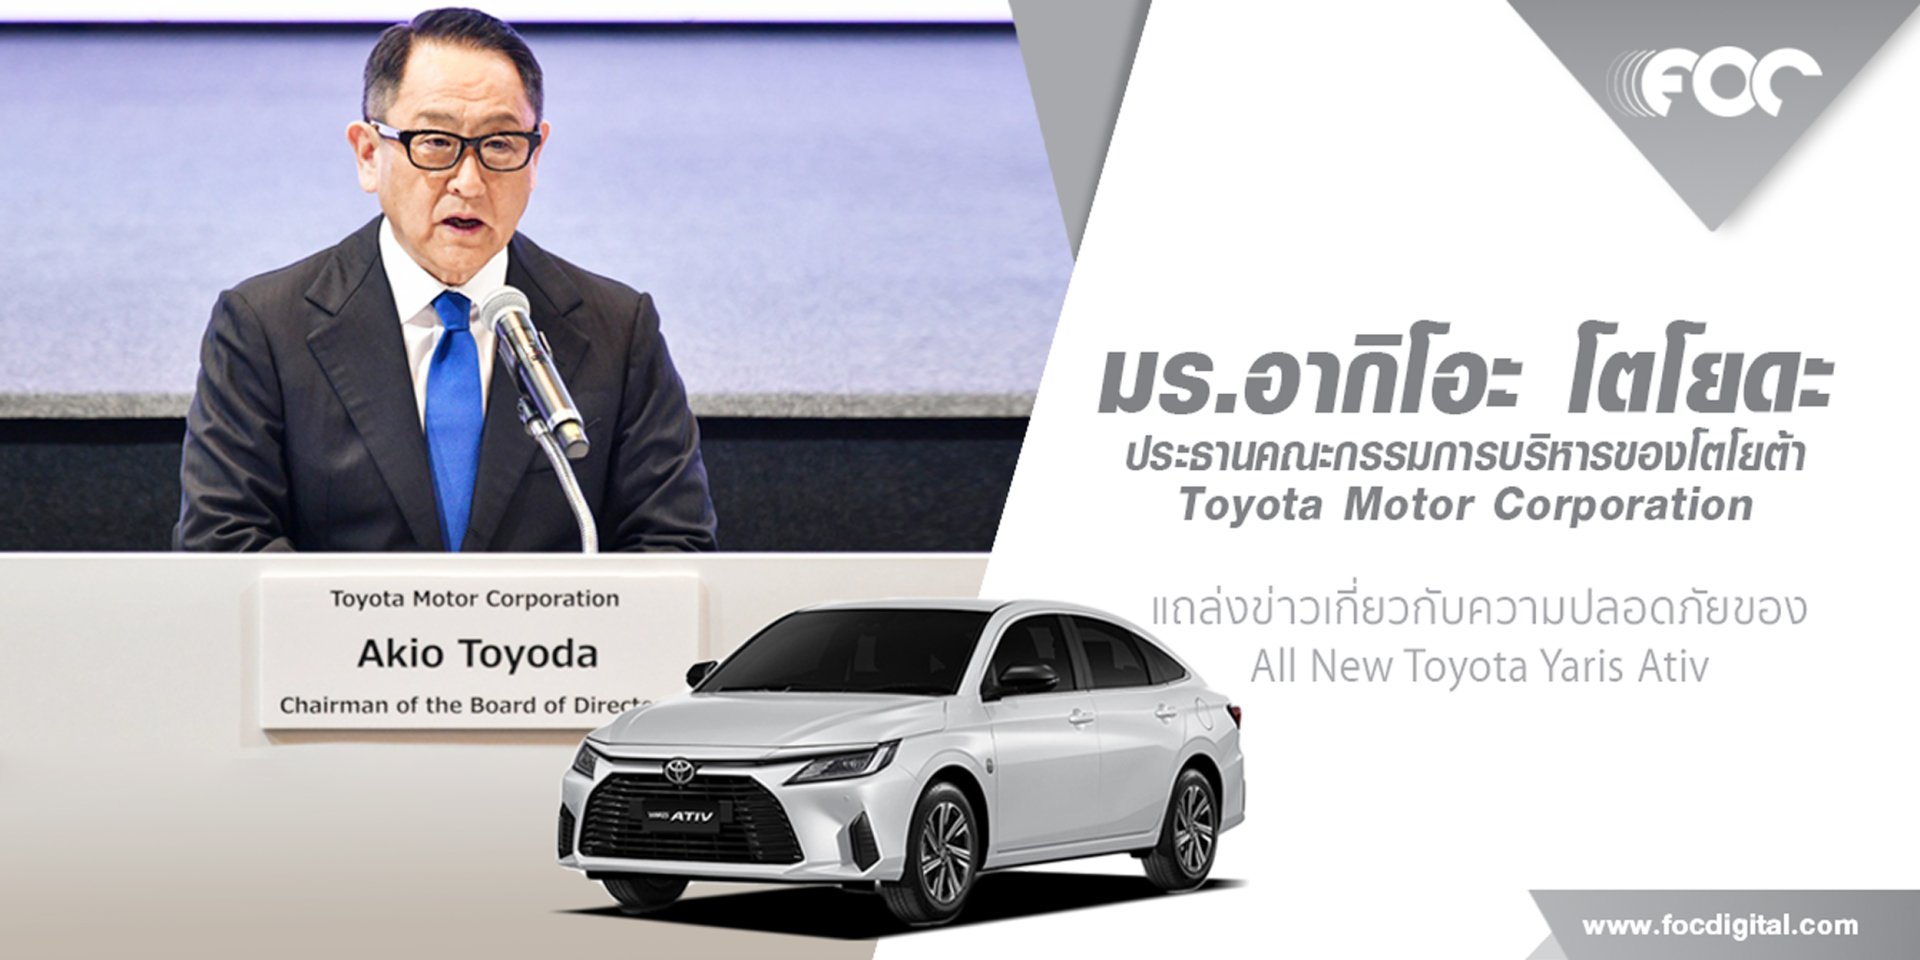 มร. อากิโอะ โตโยดะ ประธานคณะกรรมการบริหารของโตโยต้า ตอกย้ำความเชื่อมั่นในรถโตโยต้าที่ผลิตในประเทศไทย